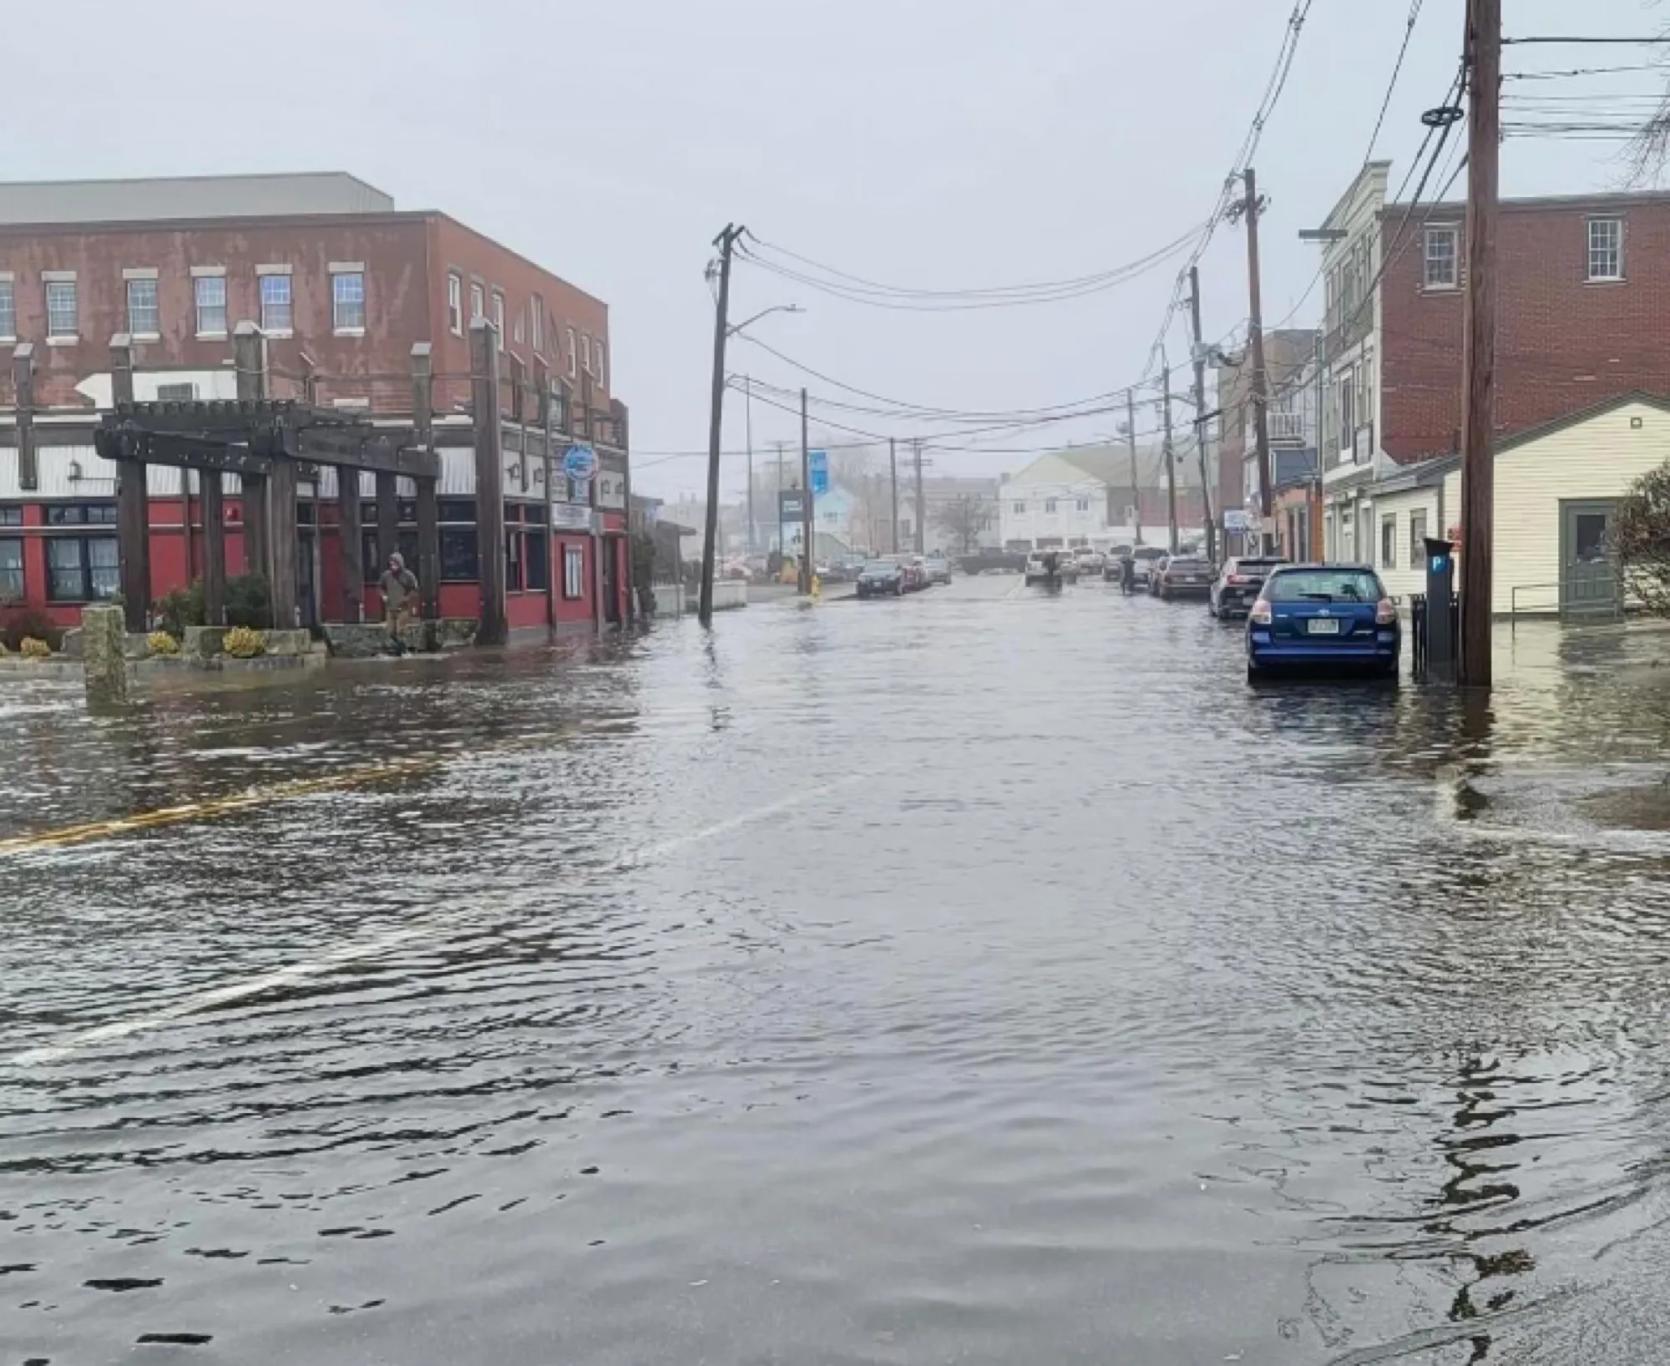 Flooded street in Gloucester, Massachusetts.